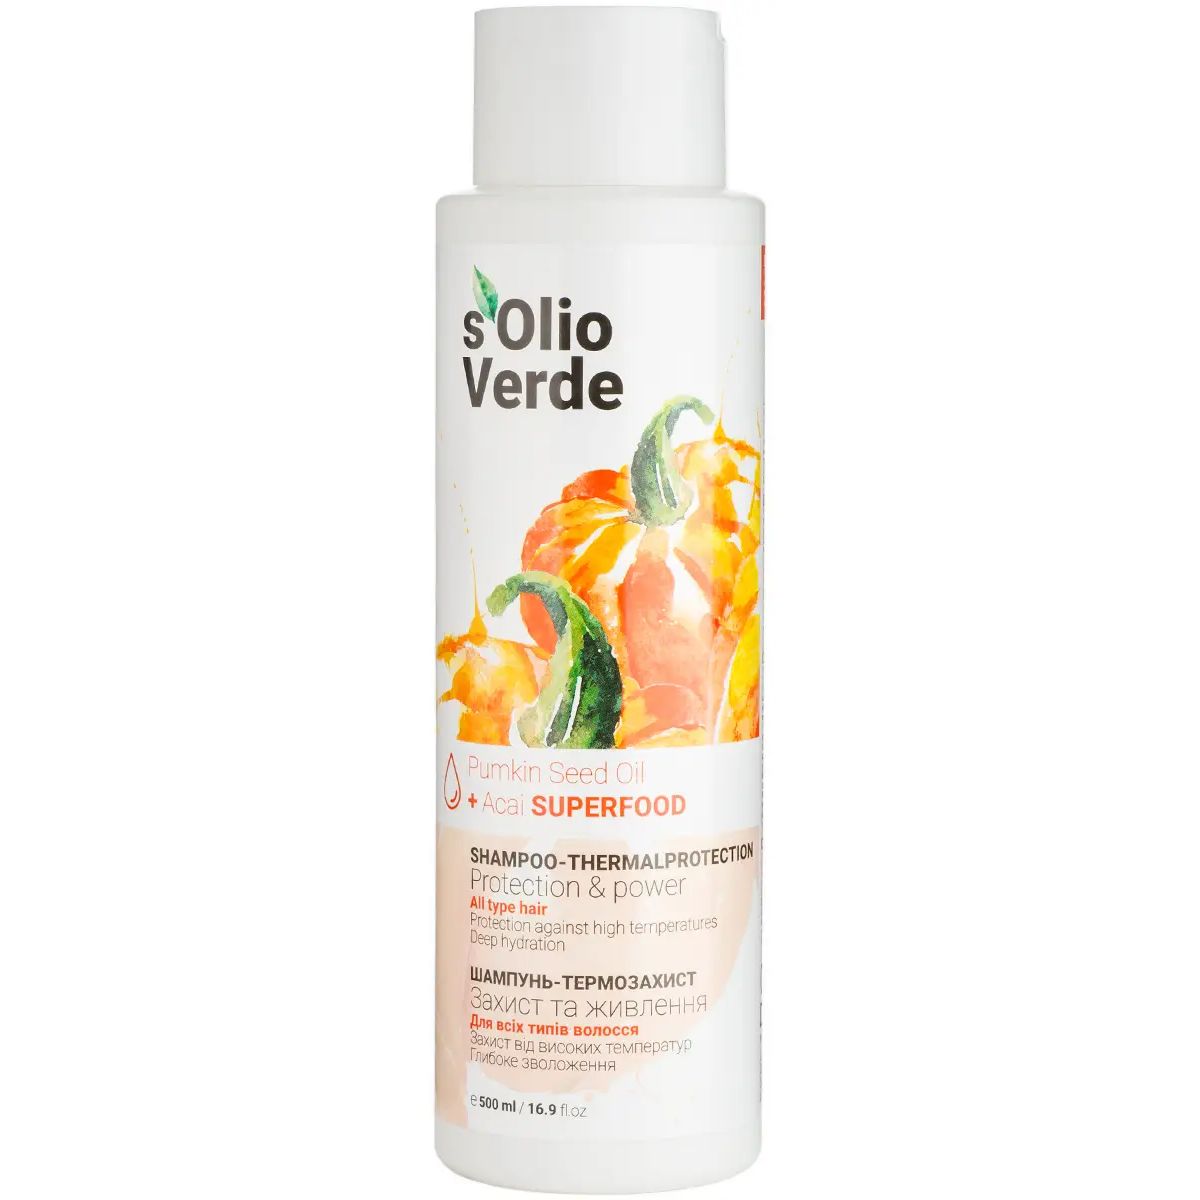 Шампунь-термозахист S'olio Verde Pumpkin Seed Oil для всіх типів волосся 500 мл - фото 1